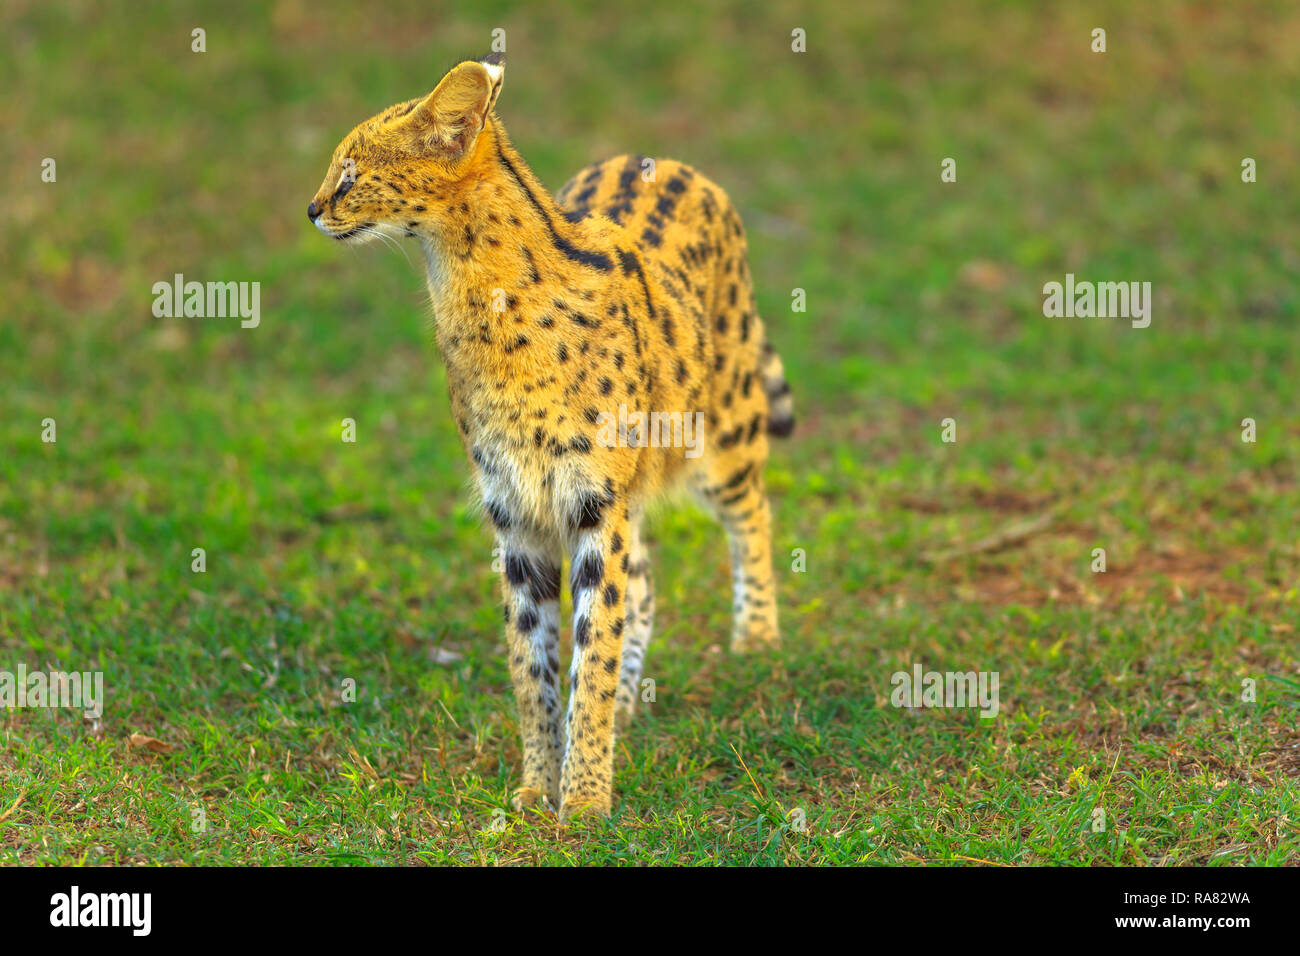 Serval debout dans l'habitat naturel. Le nom scientifique est Leptailurus serval. Le Serval est un chouette chat sauvage originaire d'Afrique. Banque D'Images